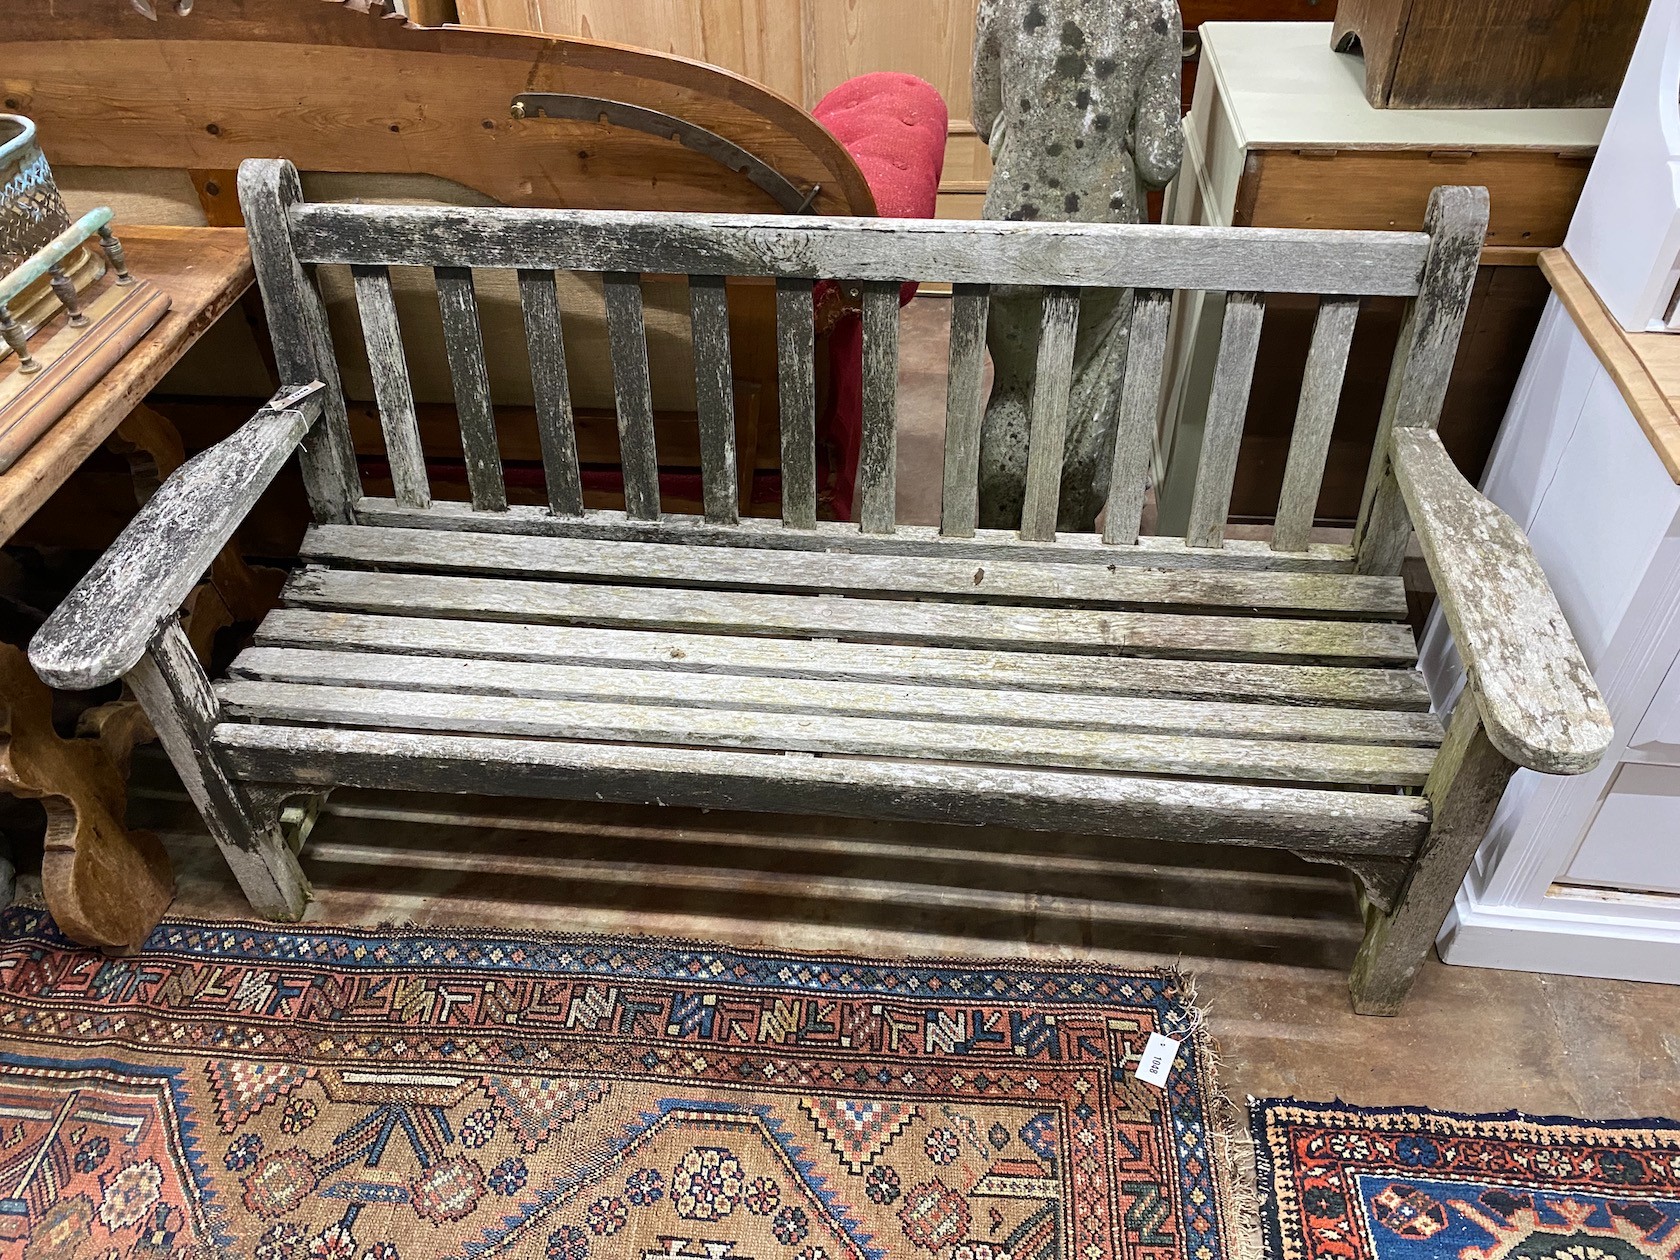 A weathered teak garden bench, width 162cm